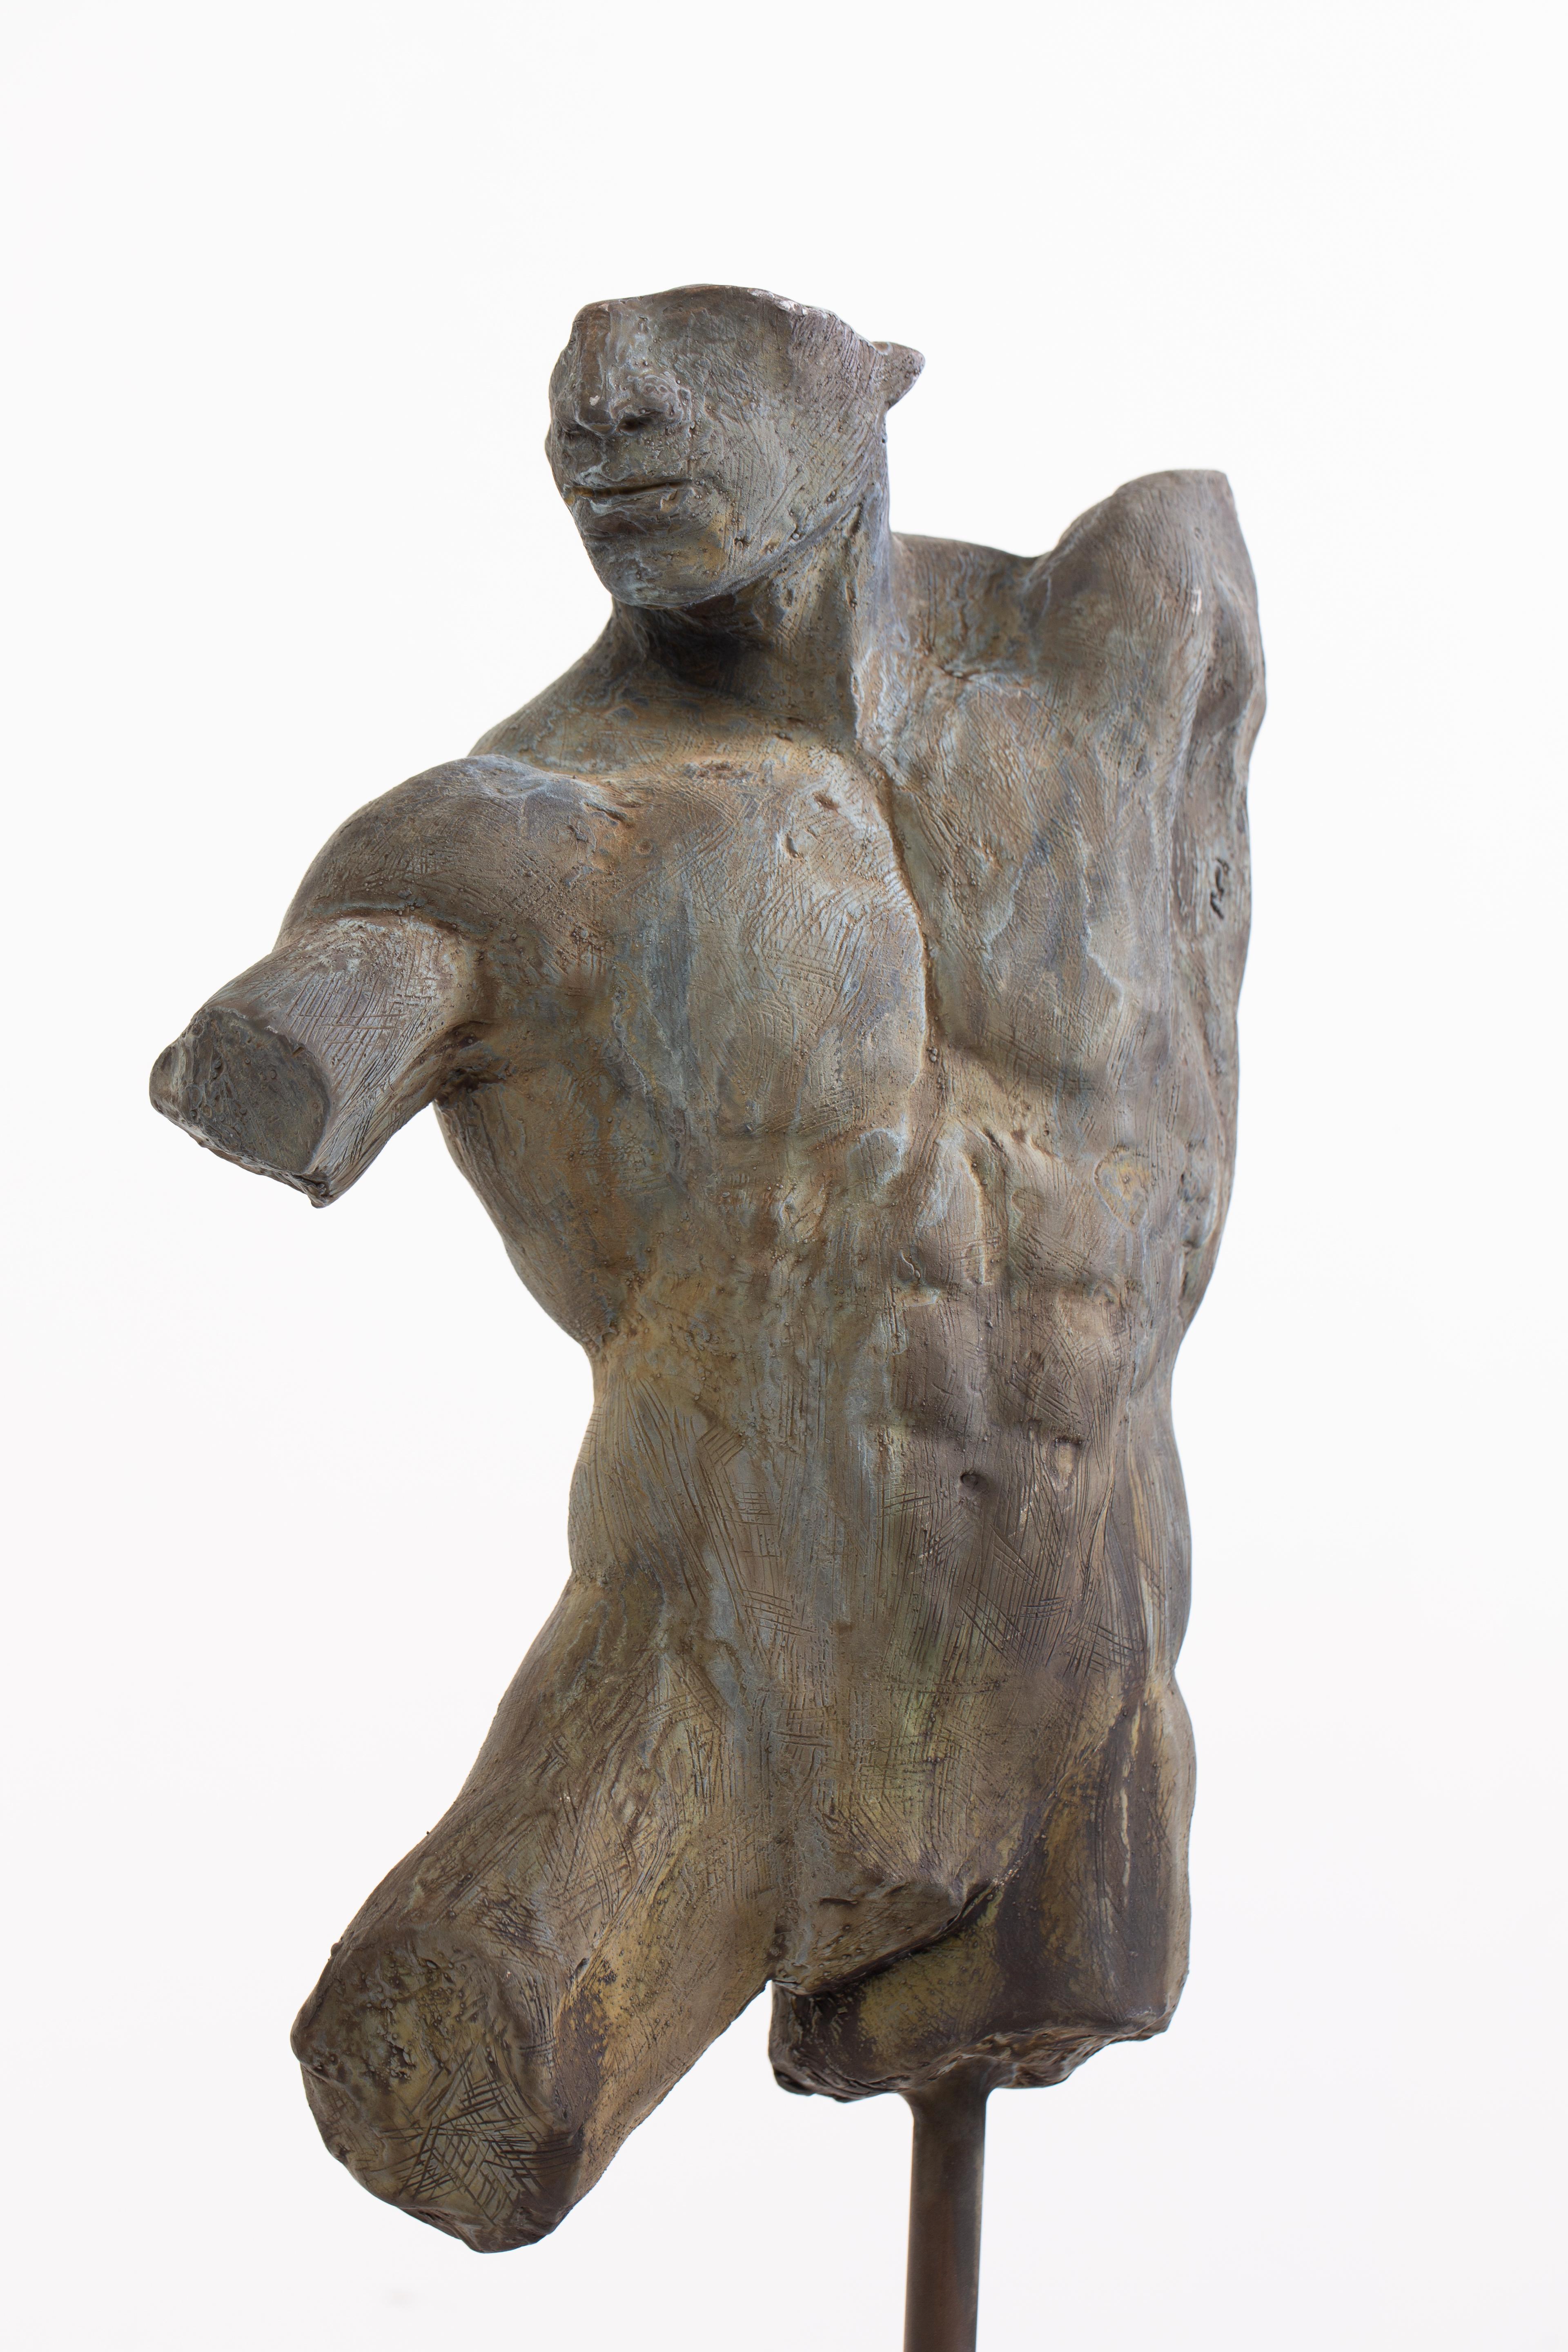 sculpted torso